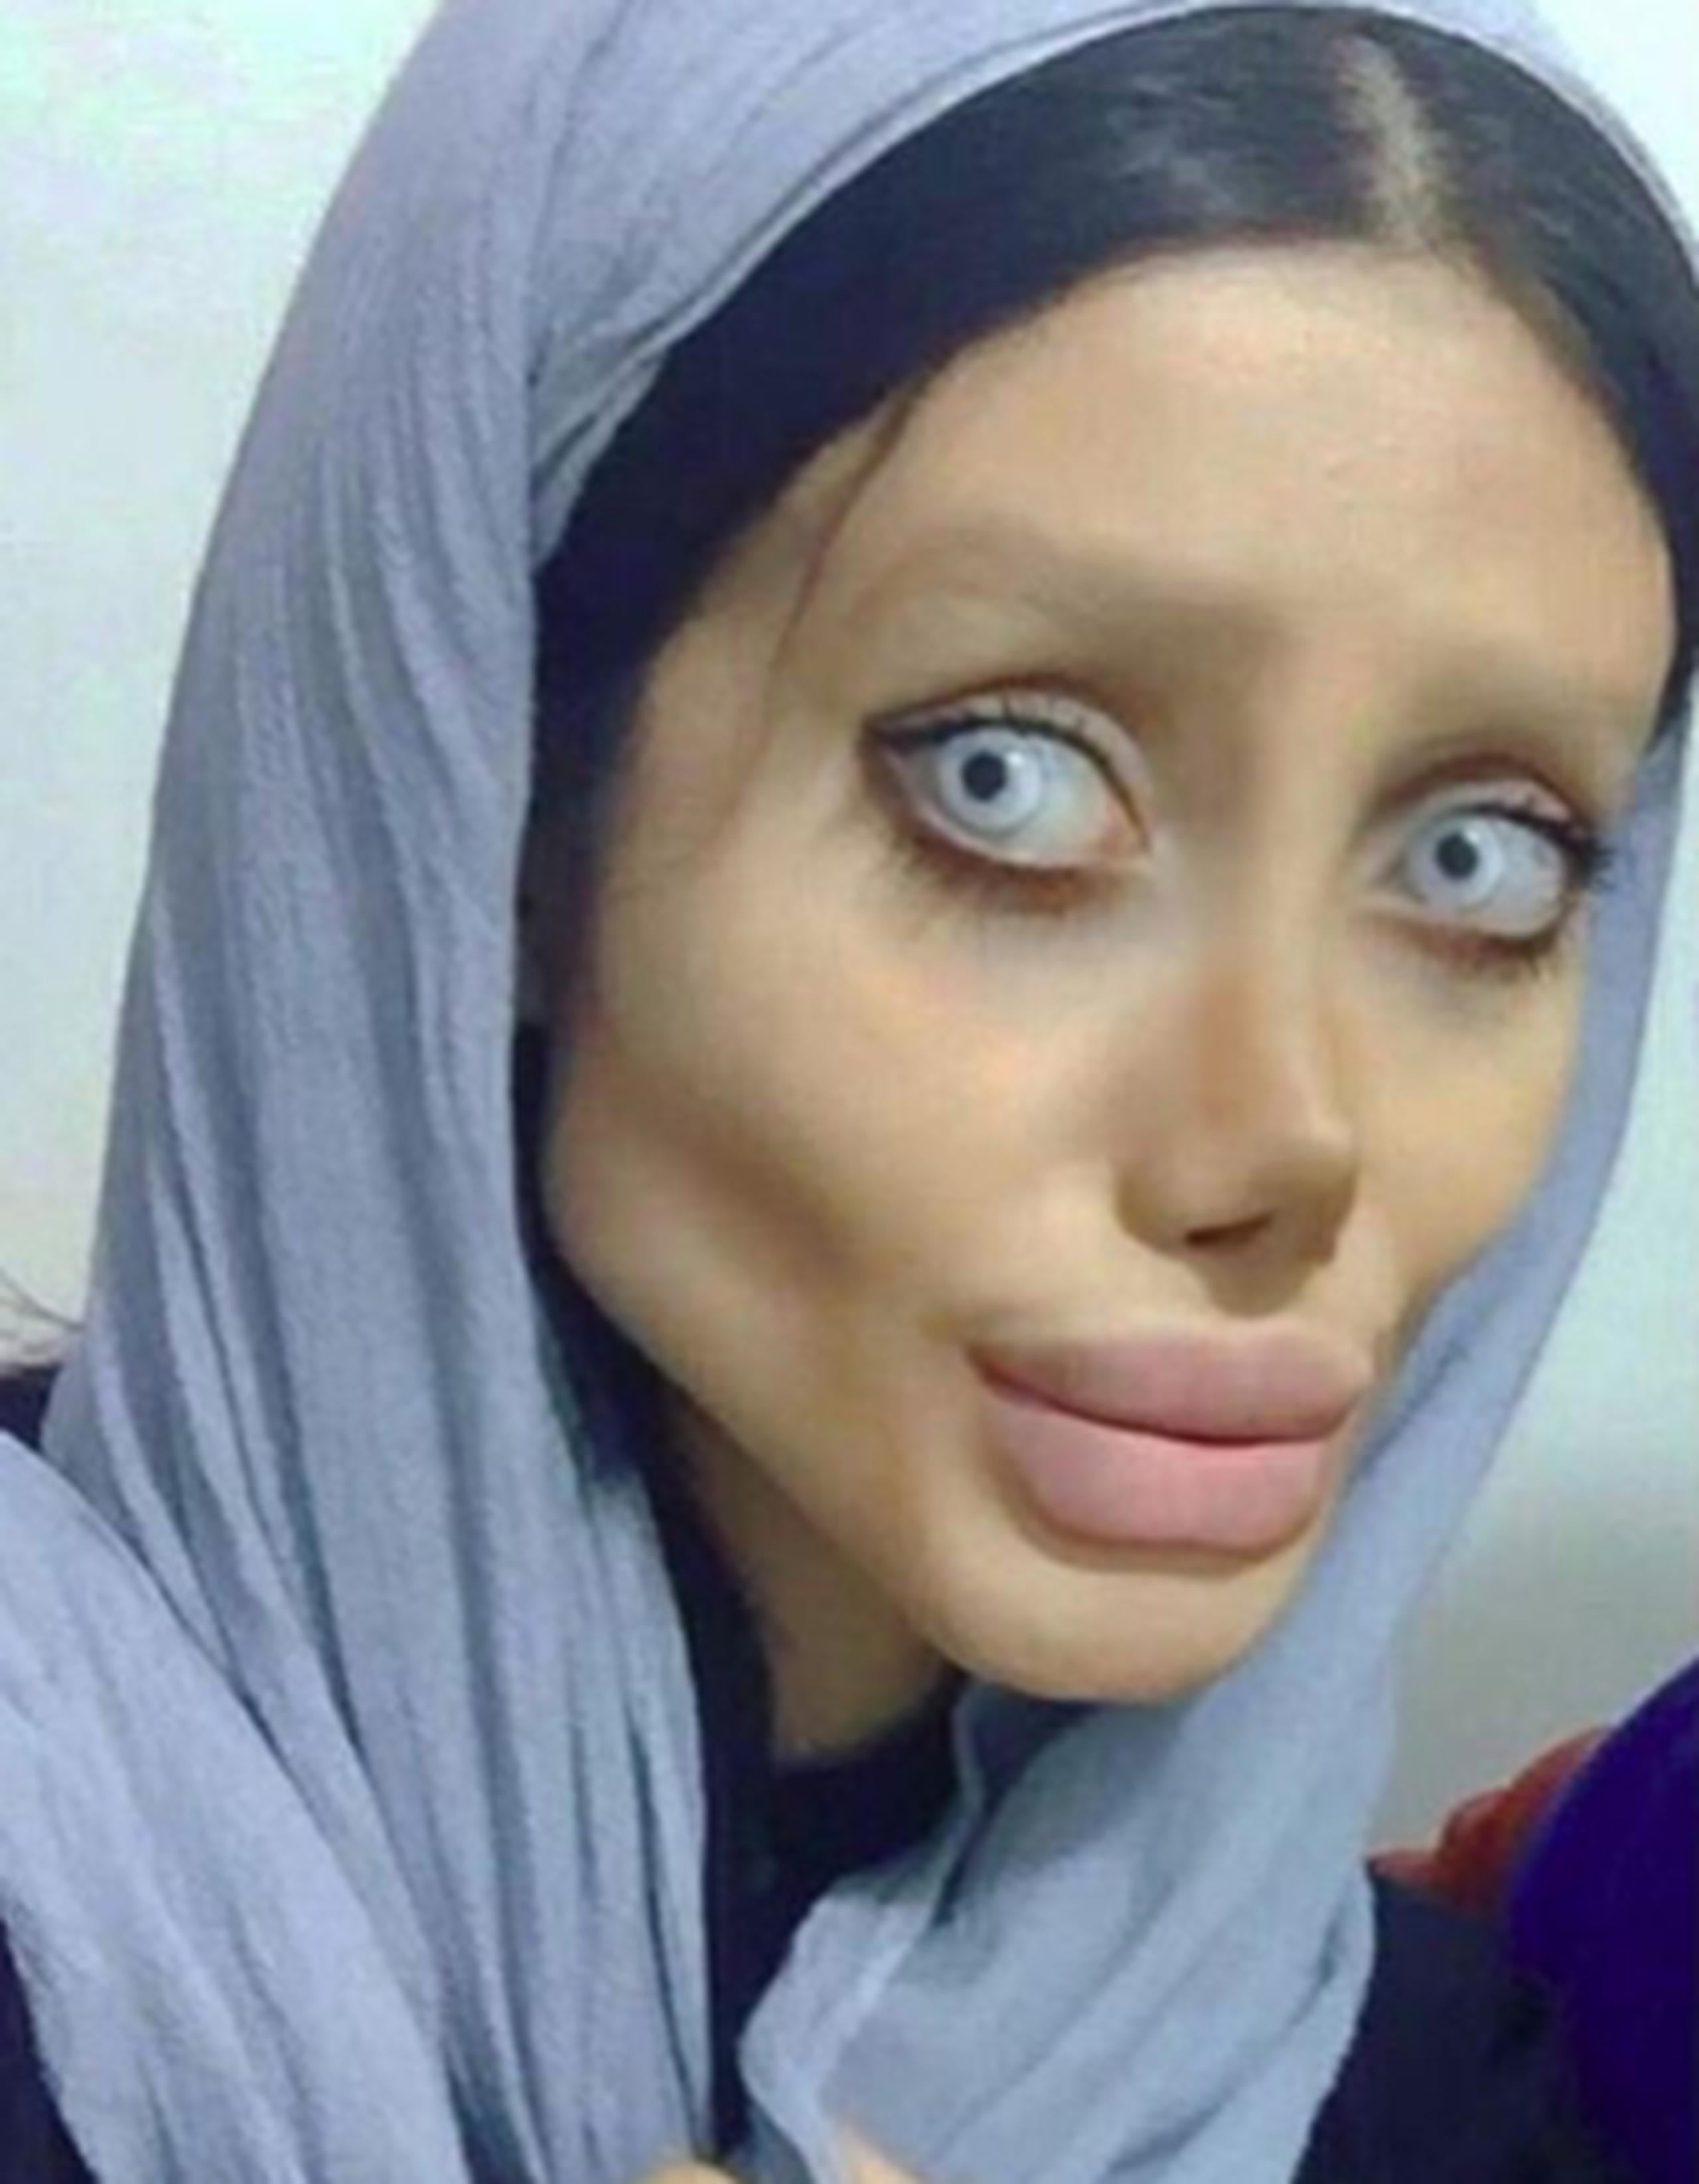 Las críticas y burlas hacia Tabar también inundaron las redes sociales, y hasta sus propios seguidores en Instagram afirmaban que más que parecerse a Jolie, se veía como un zombie. (Instagram)